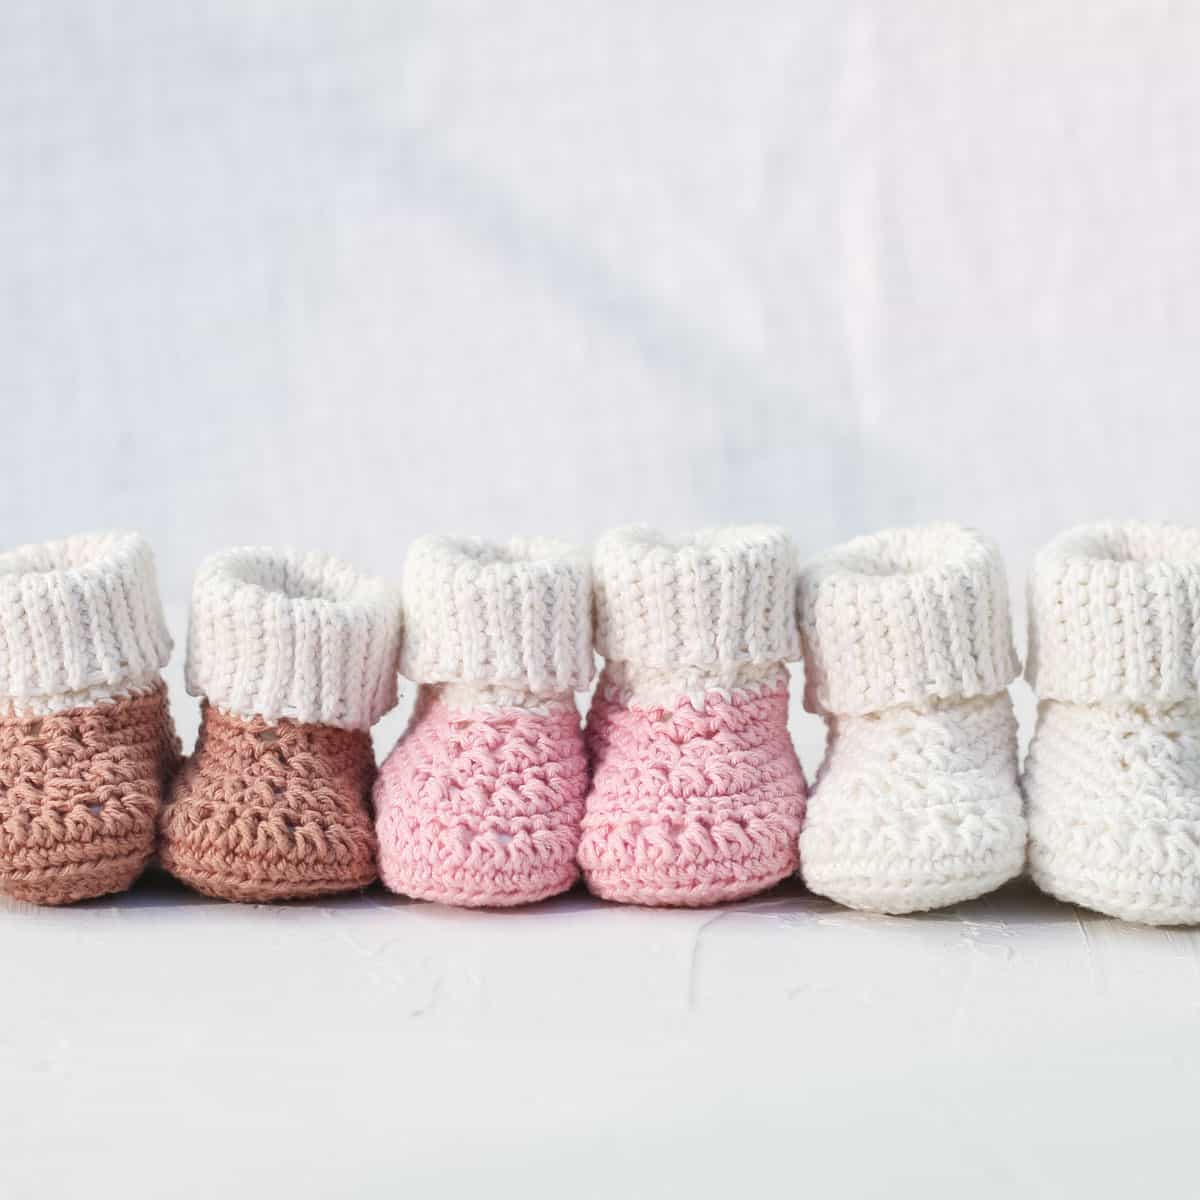 51 Best Woolen socks ideas  woolen socks, crochet slippers, knitting socks